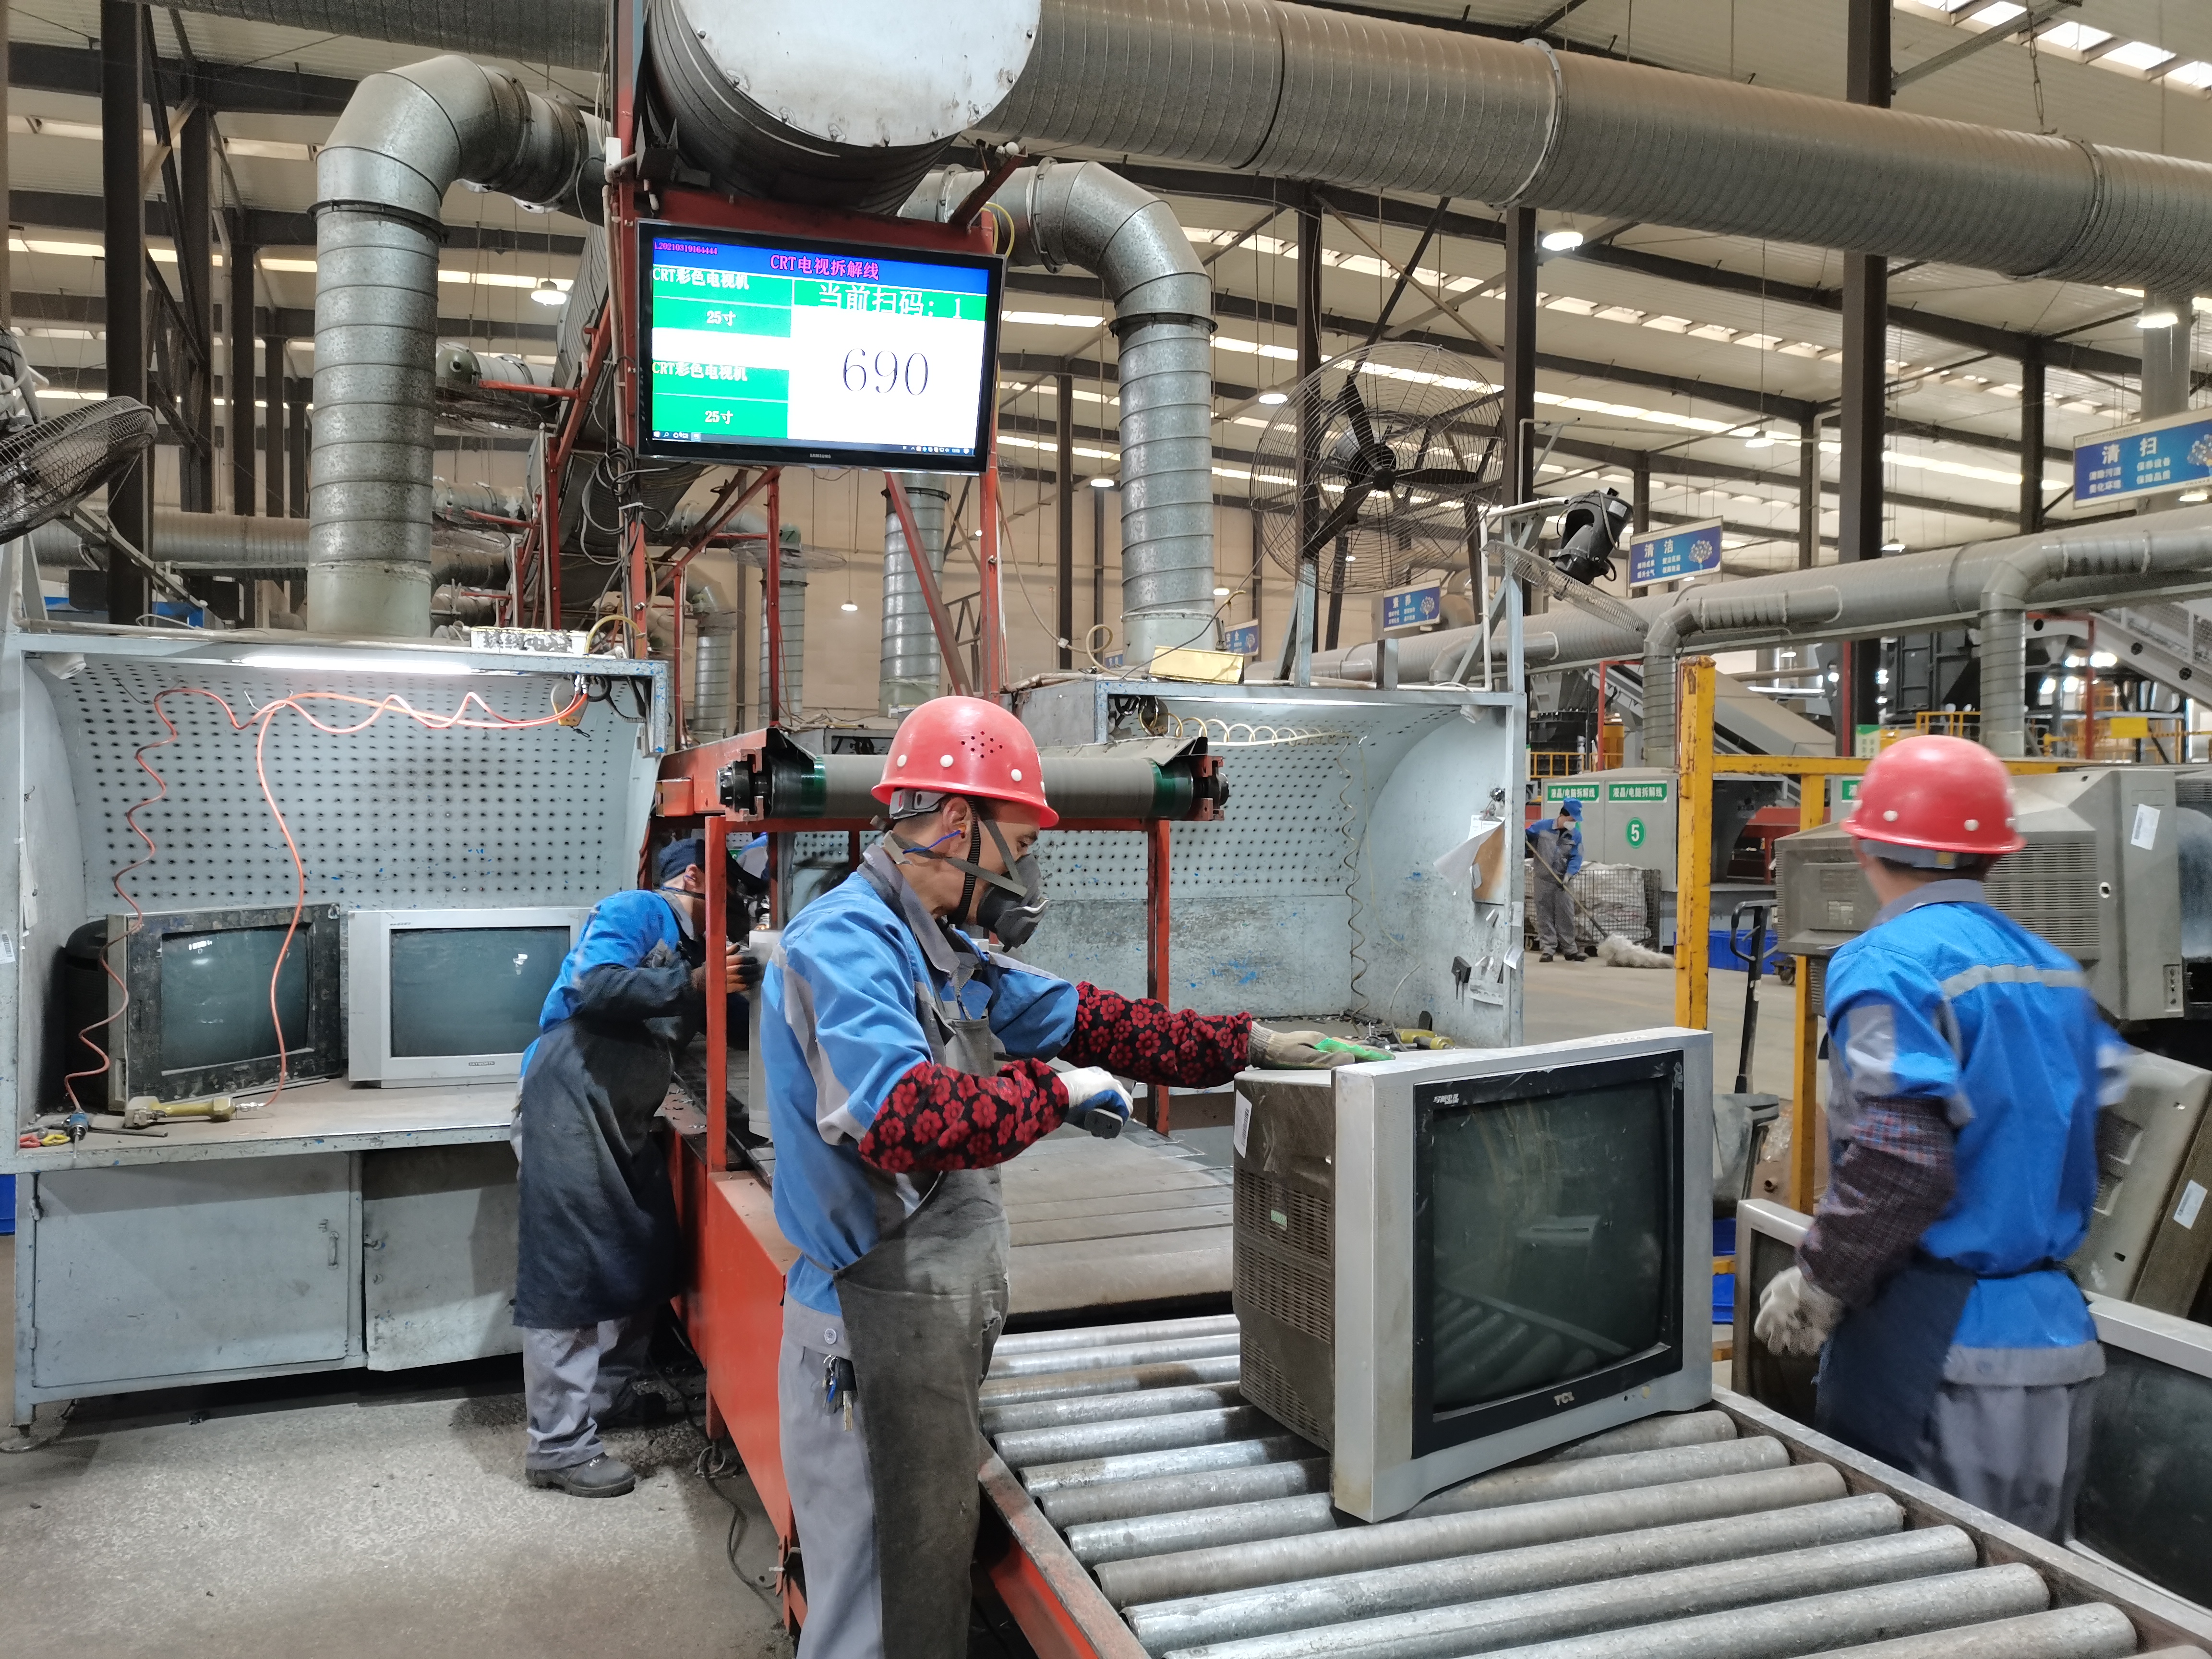 重庆中天电子废弃物处理有限公司厂区内，工作人员正在拆解废旧电视机。受访单位供图